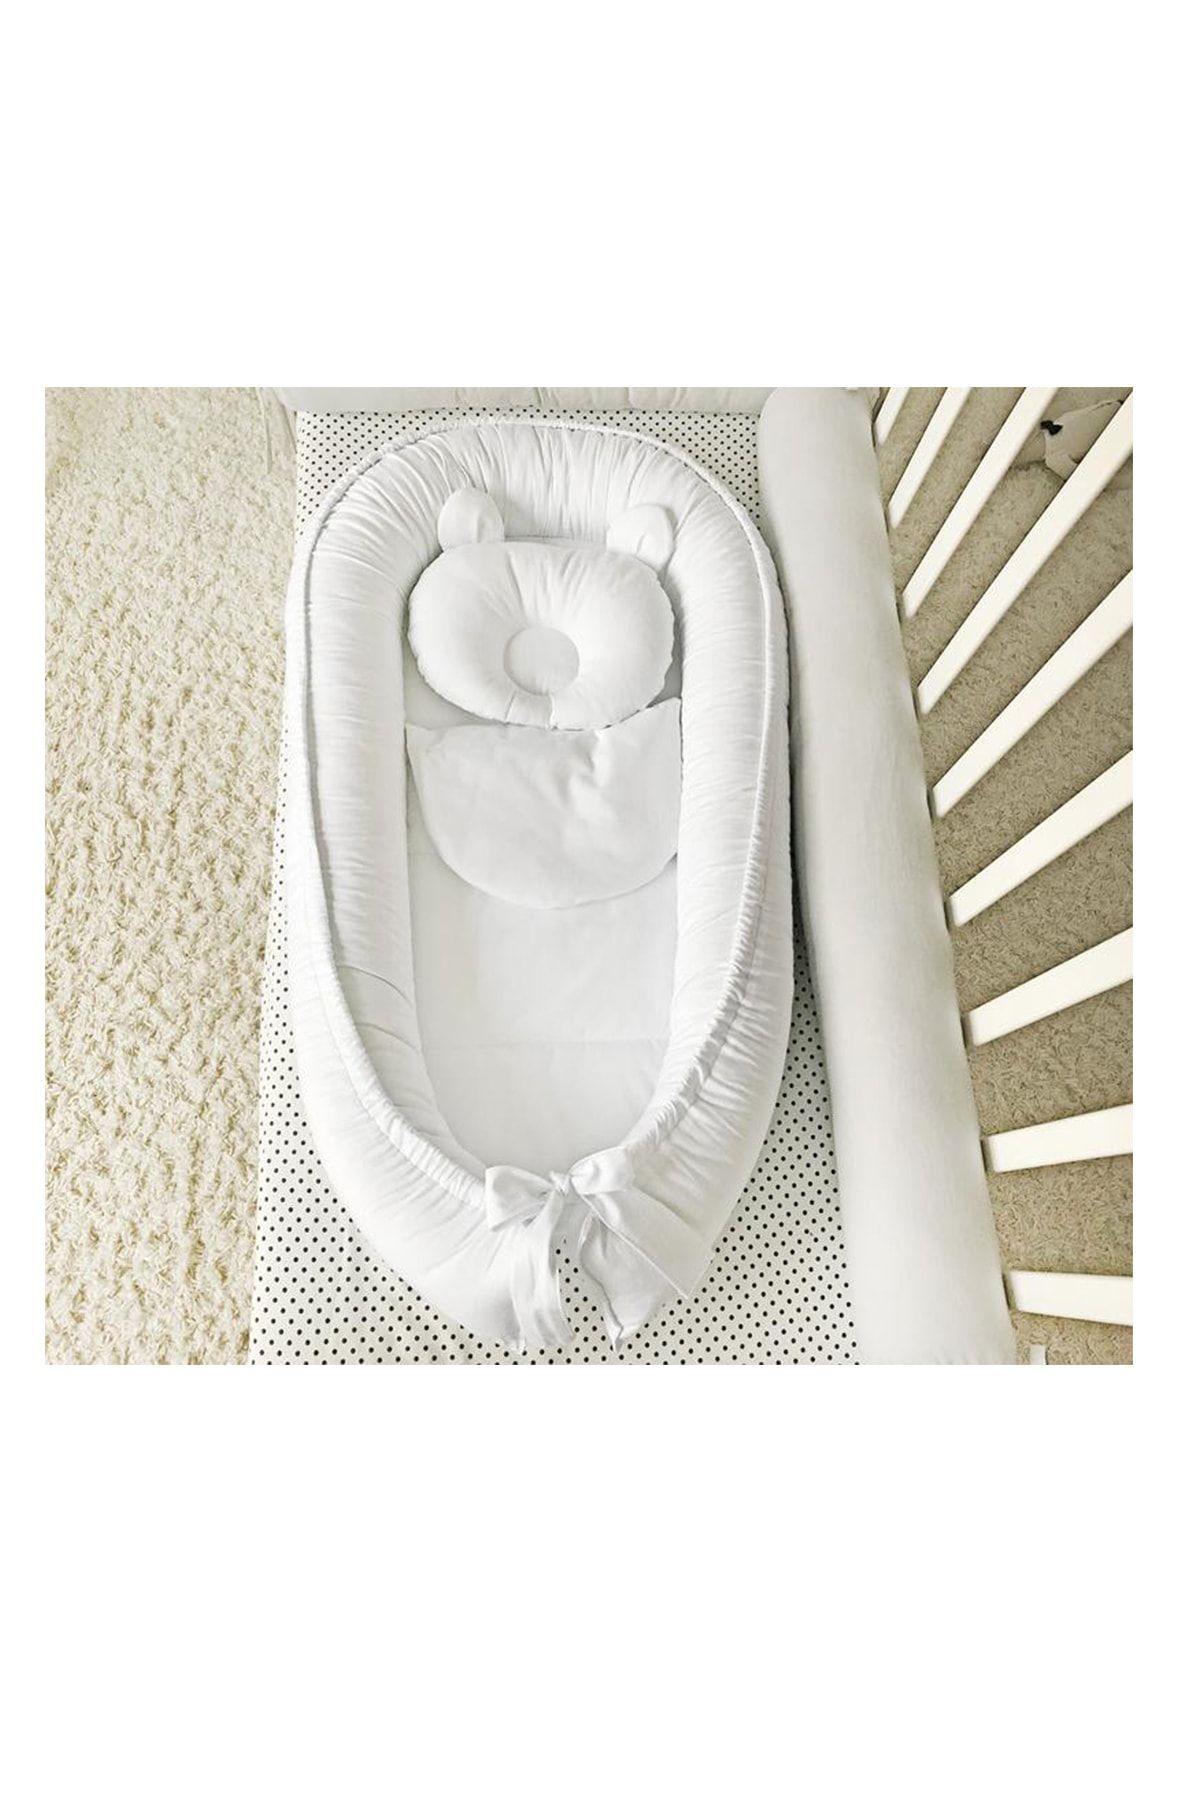 Nest Beyaz Tasarım Lüx Ortopedik Bebek Yatağı Jaju-babynest